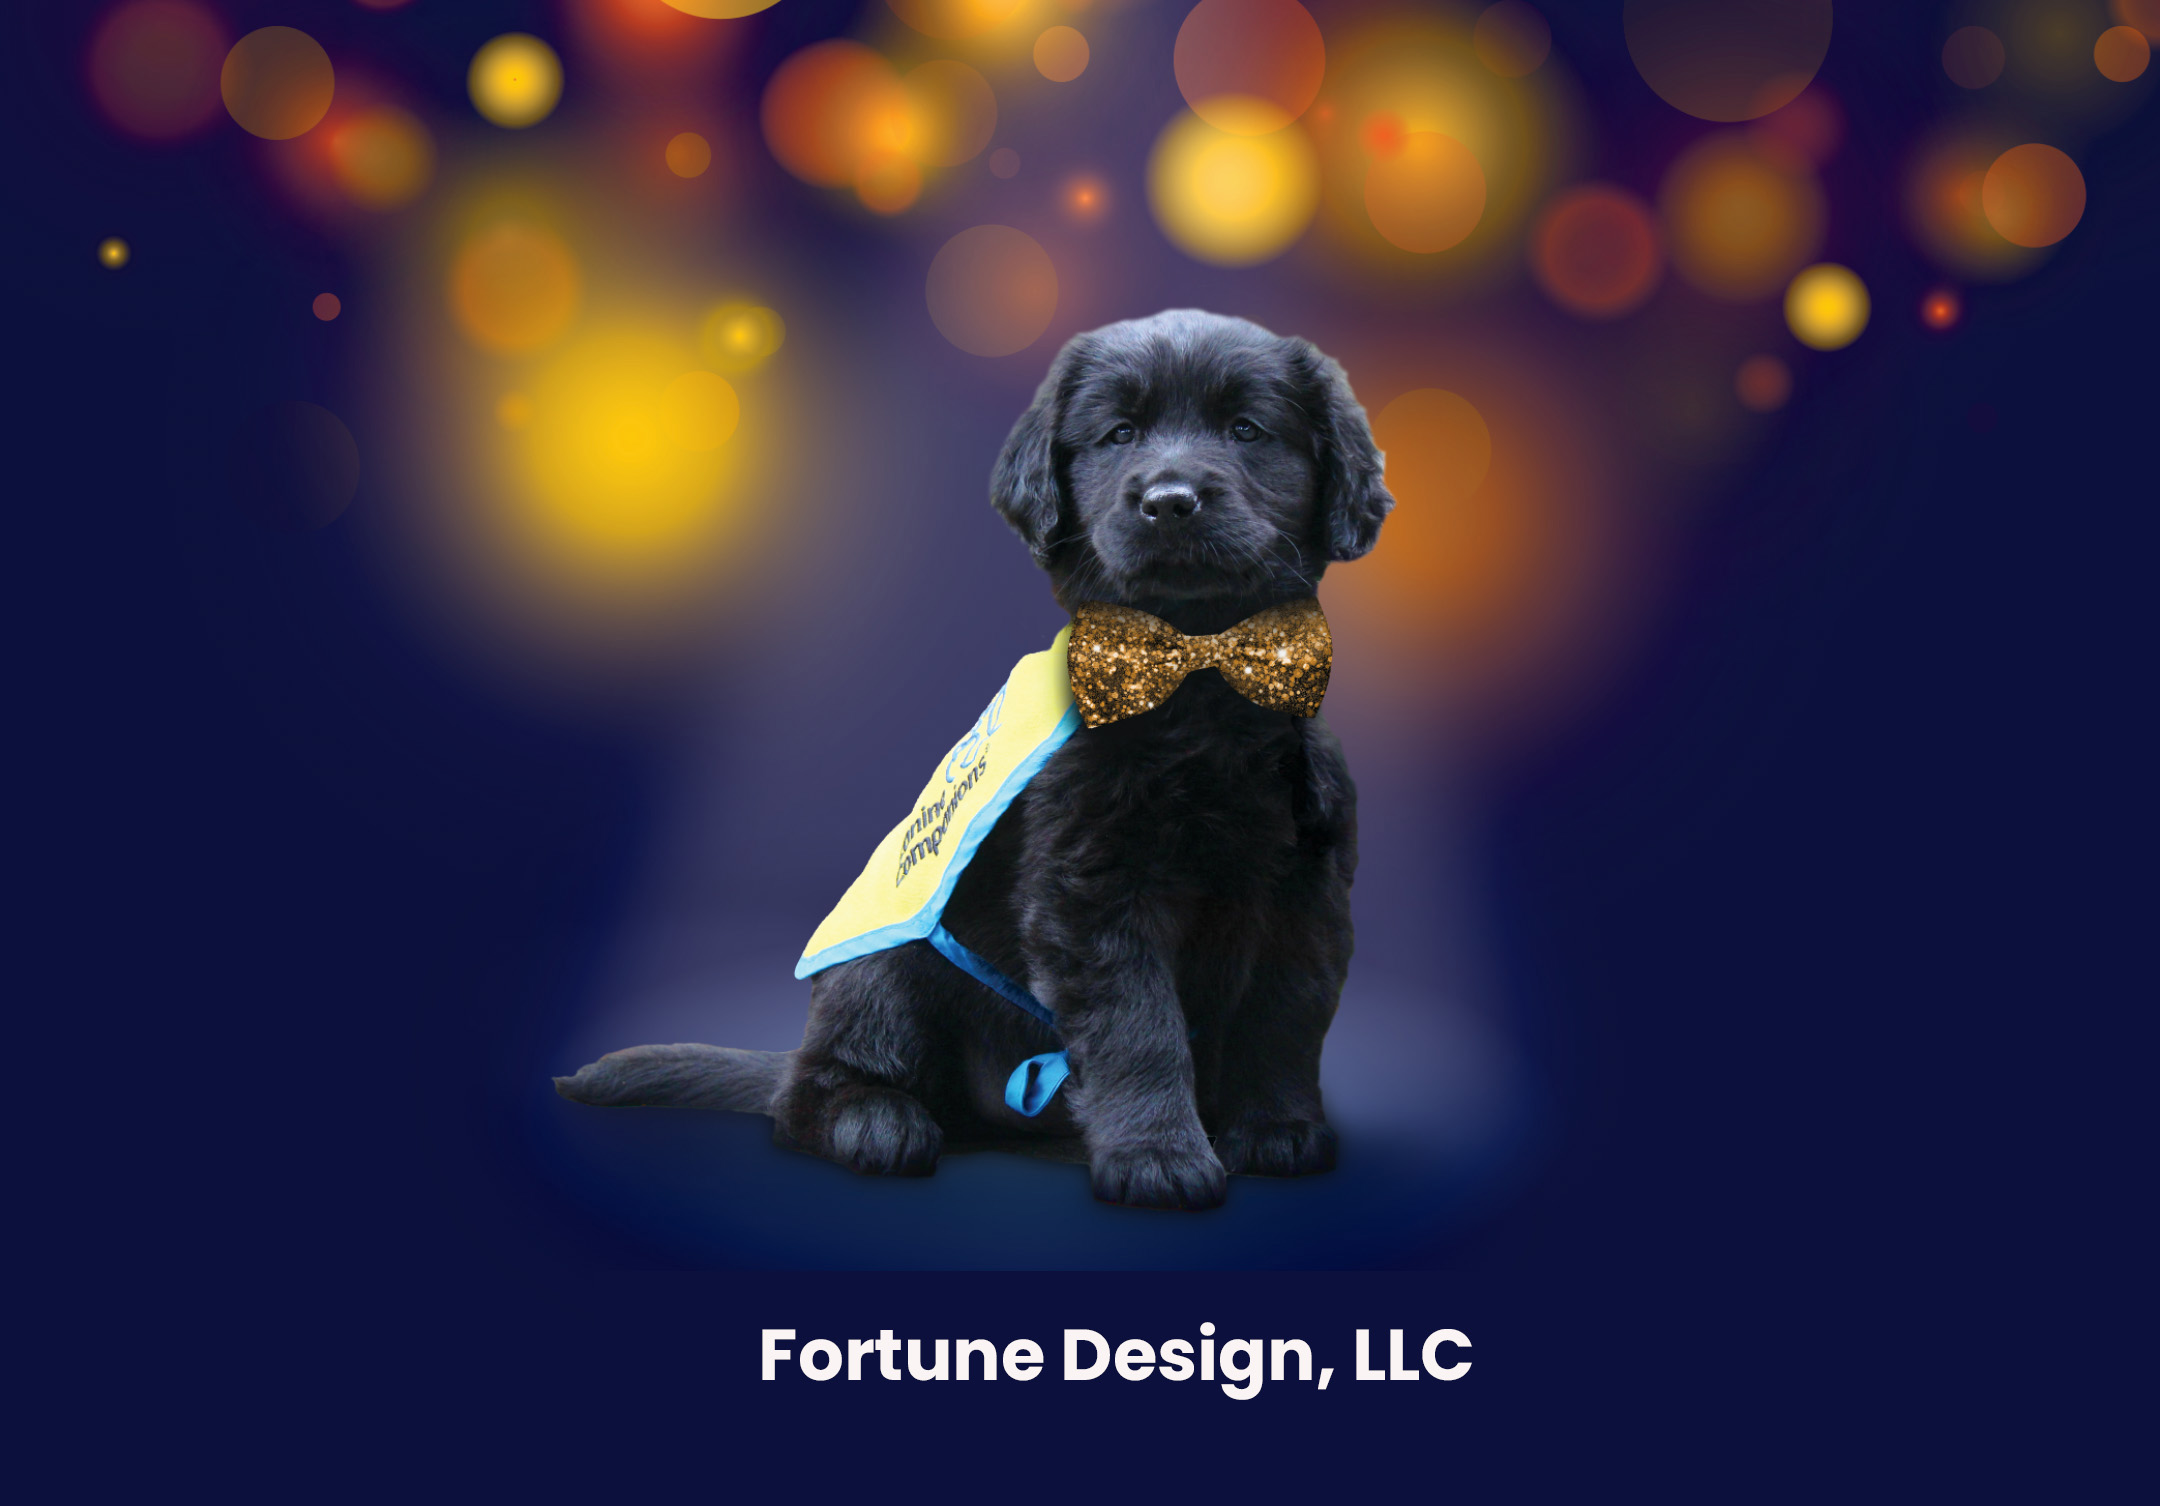 Fortune Design, LLC